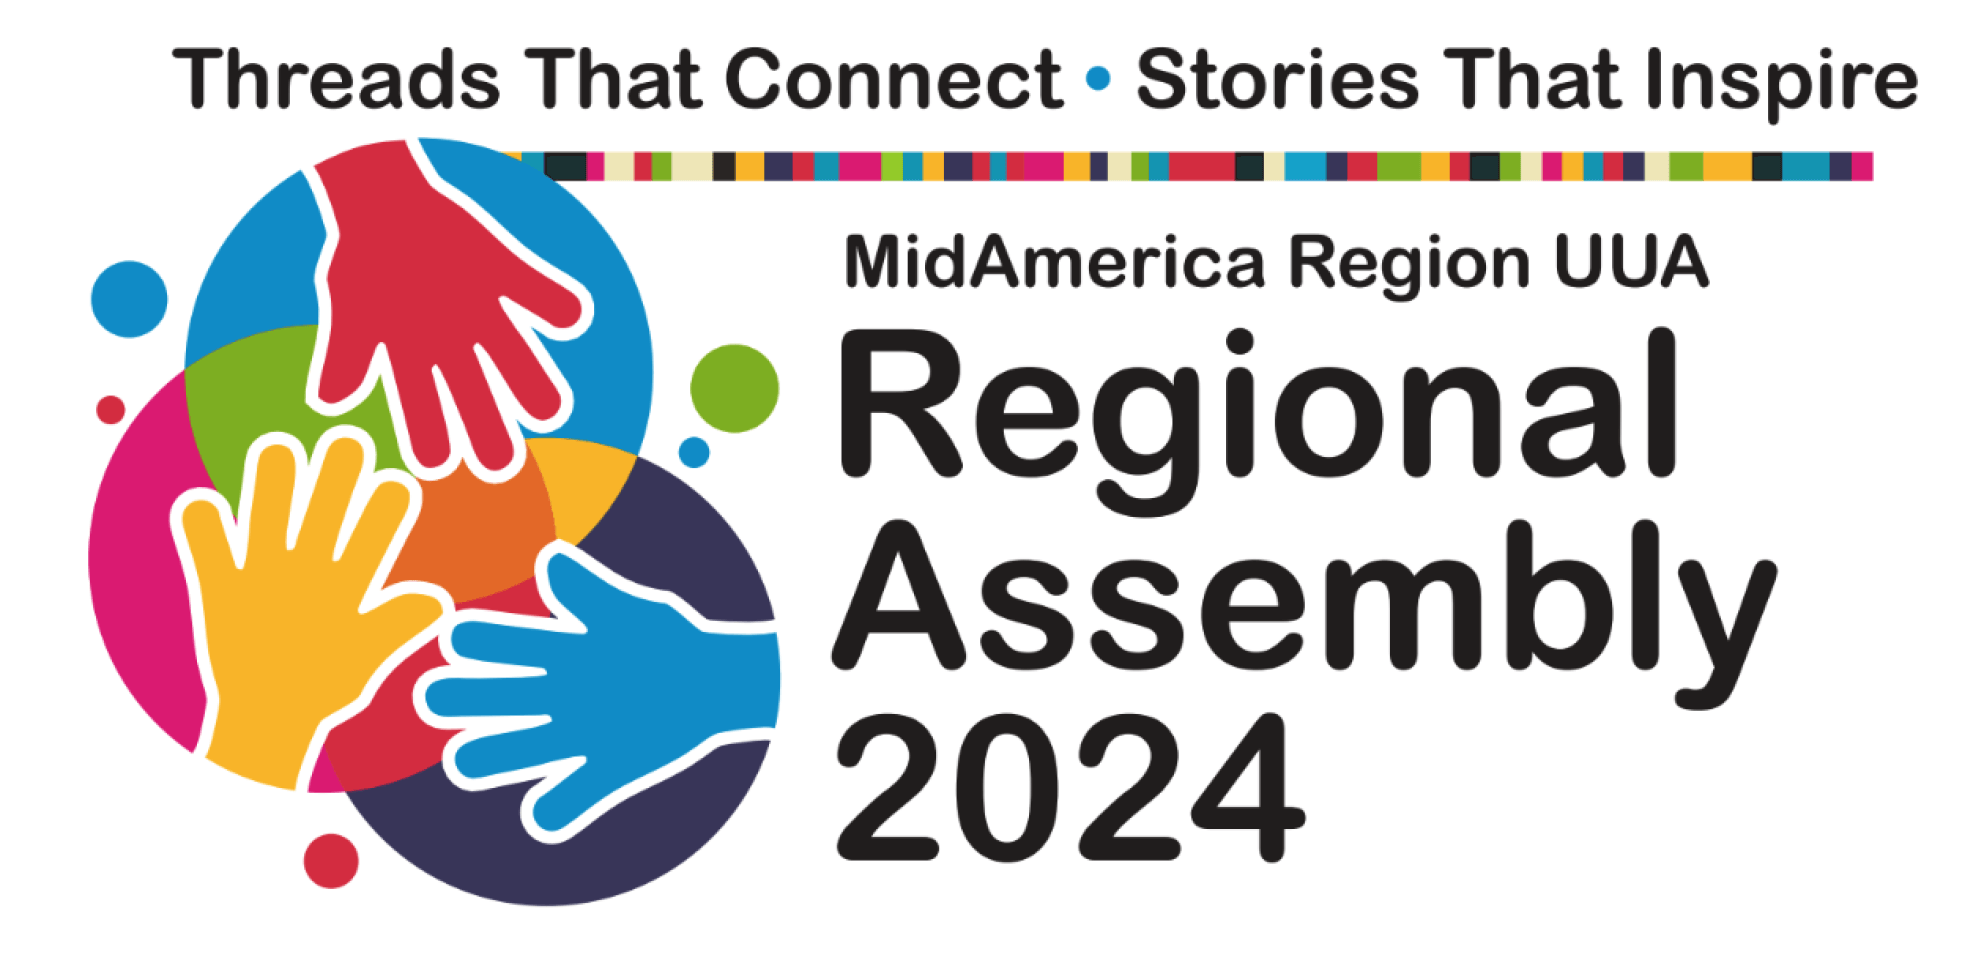 MidAmerica Regional Assembly 2024